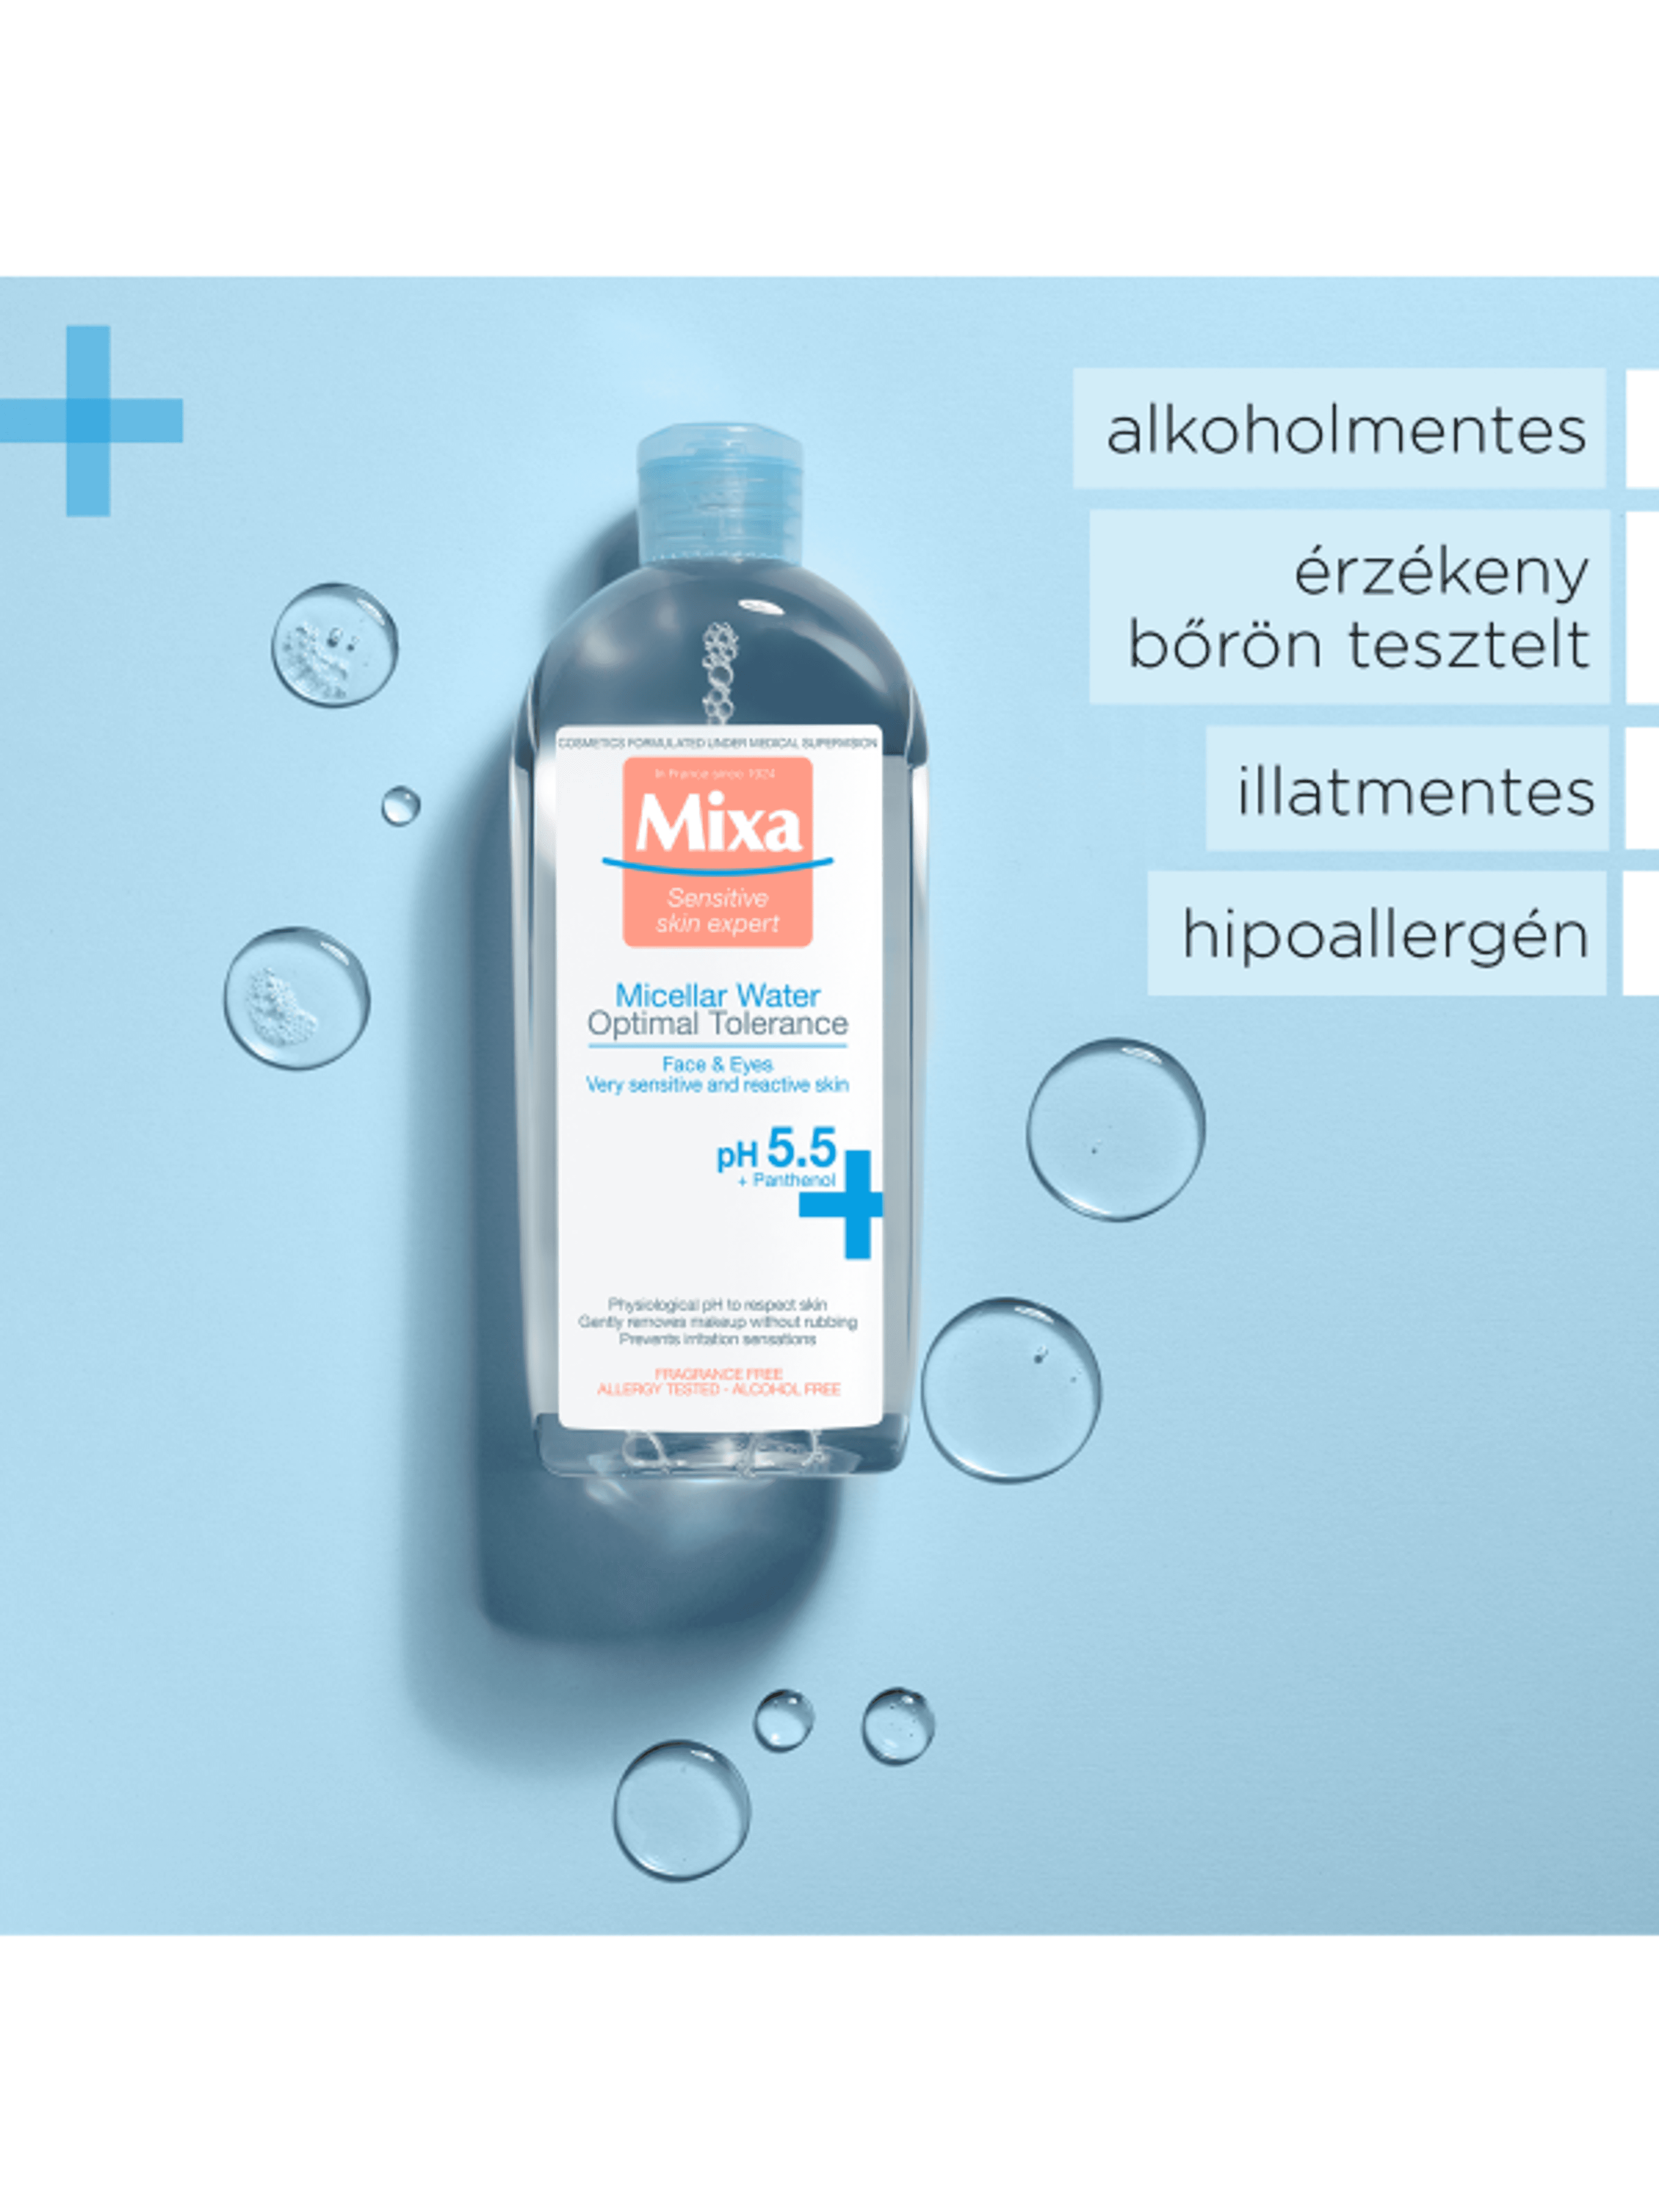 Mixa Optimal Tolerance micellás víz érzékeny és reaktív bőrre - 400 ml-4